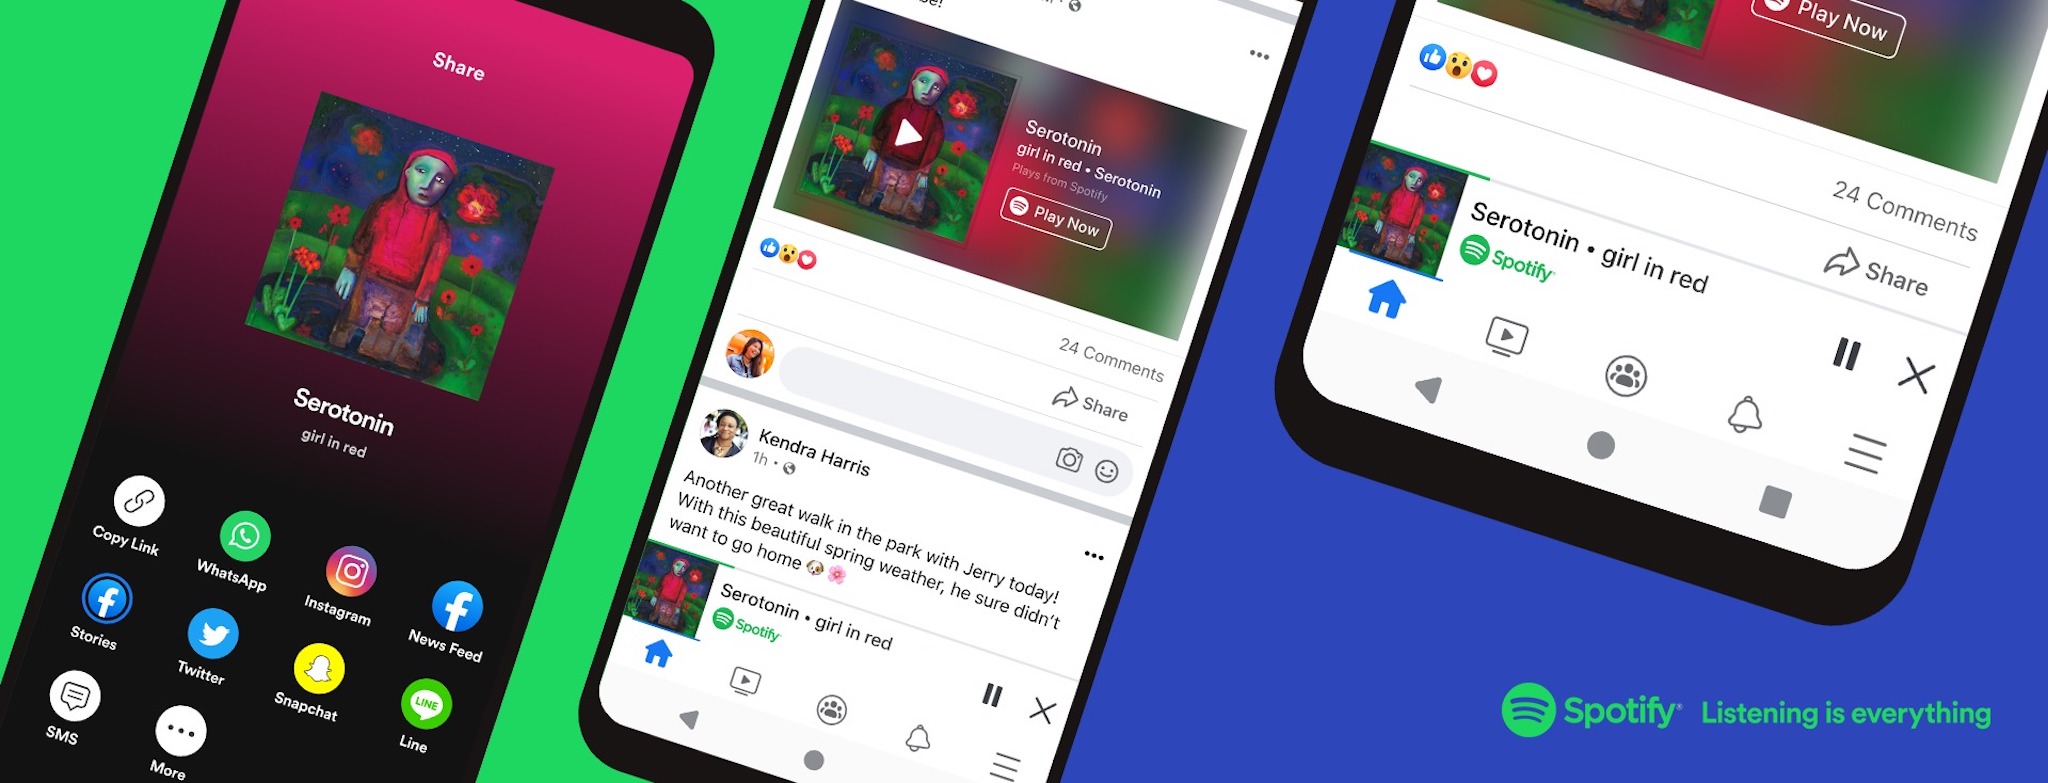 Người dùng sắp được nghe Spotify trực tiếp từ Facebook mà không cần mở ứng dụng